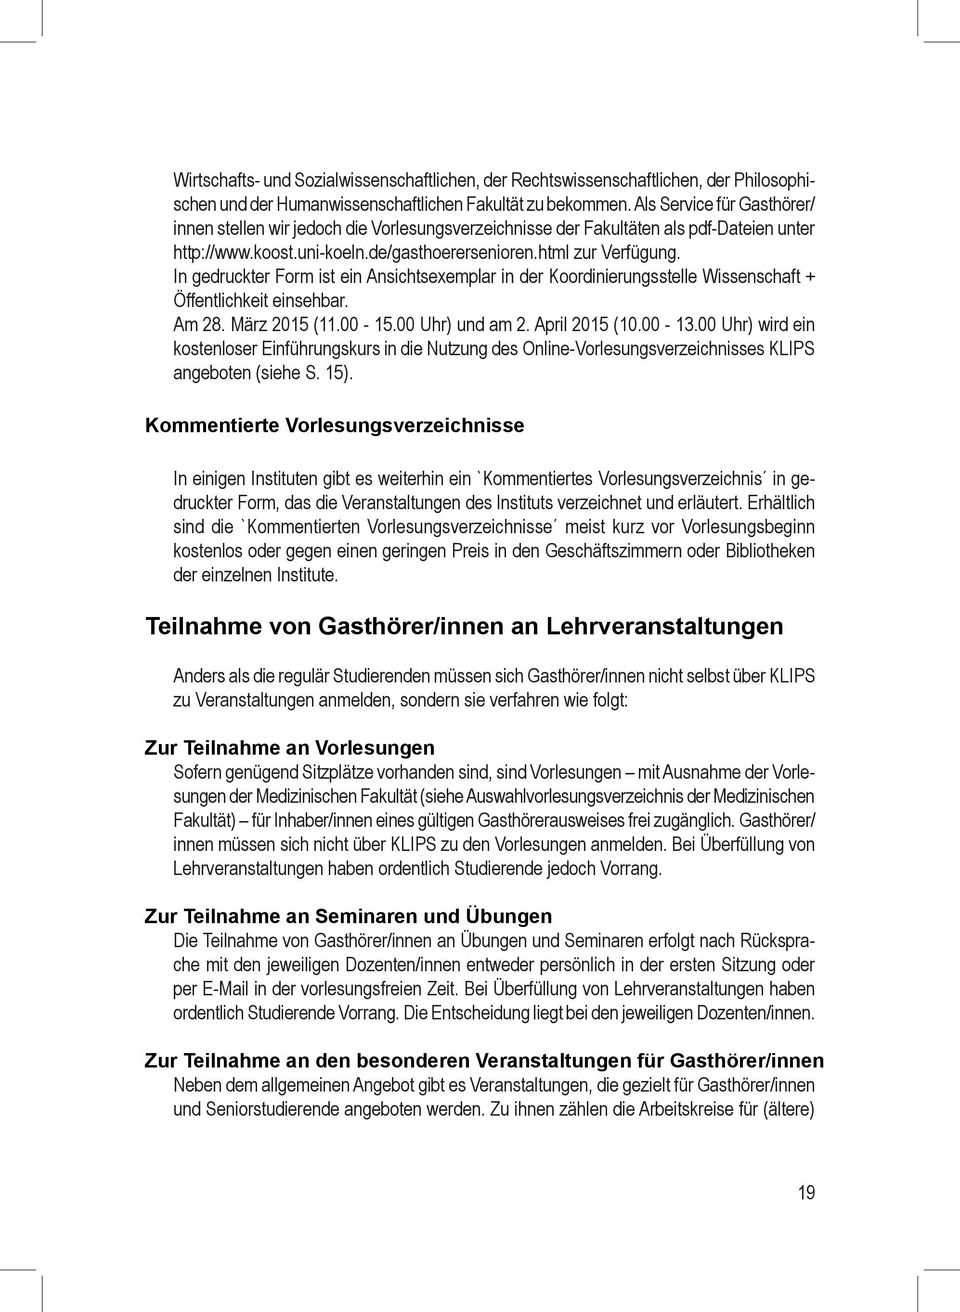 In gedruckter Form ist ein Ansichtsexemplar in der Koordinierungsstelle Wissenschaft + Öffentlichkeit einsehbar. Am 28. März 2015 (11.00-15.00 Uhr) und am 2. April 2015 (10.00-13.